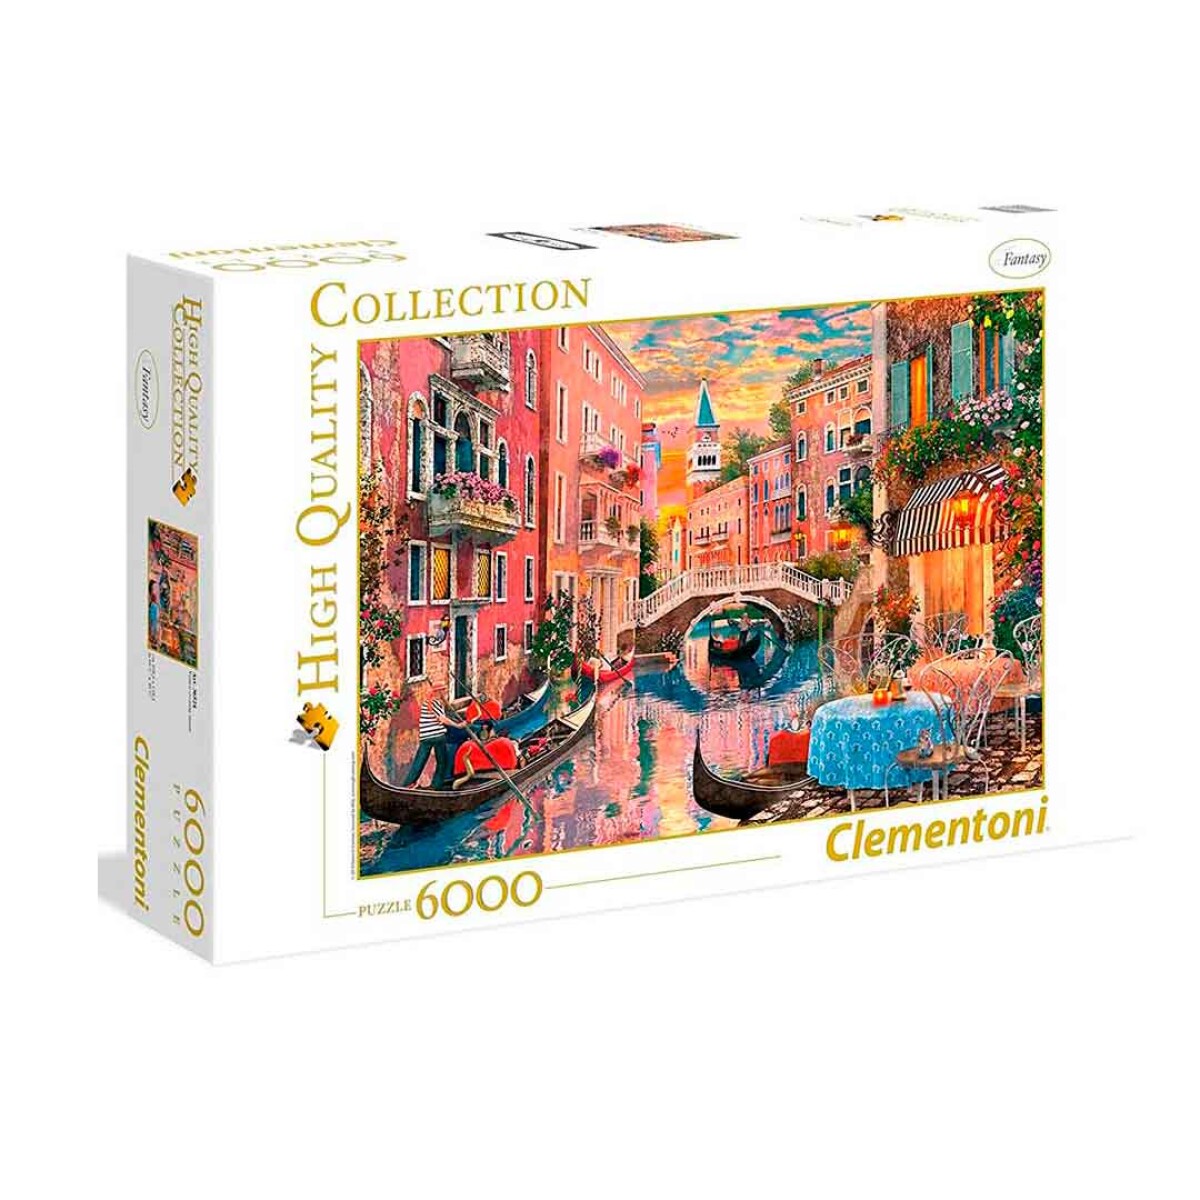 Puzzle Clementoni 6000 piezas Atardecer en Venecia - 001 